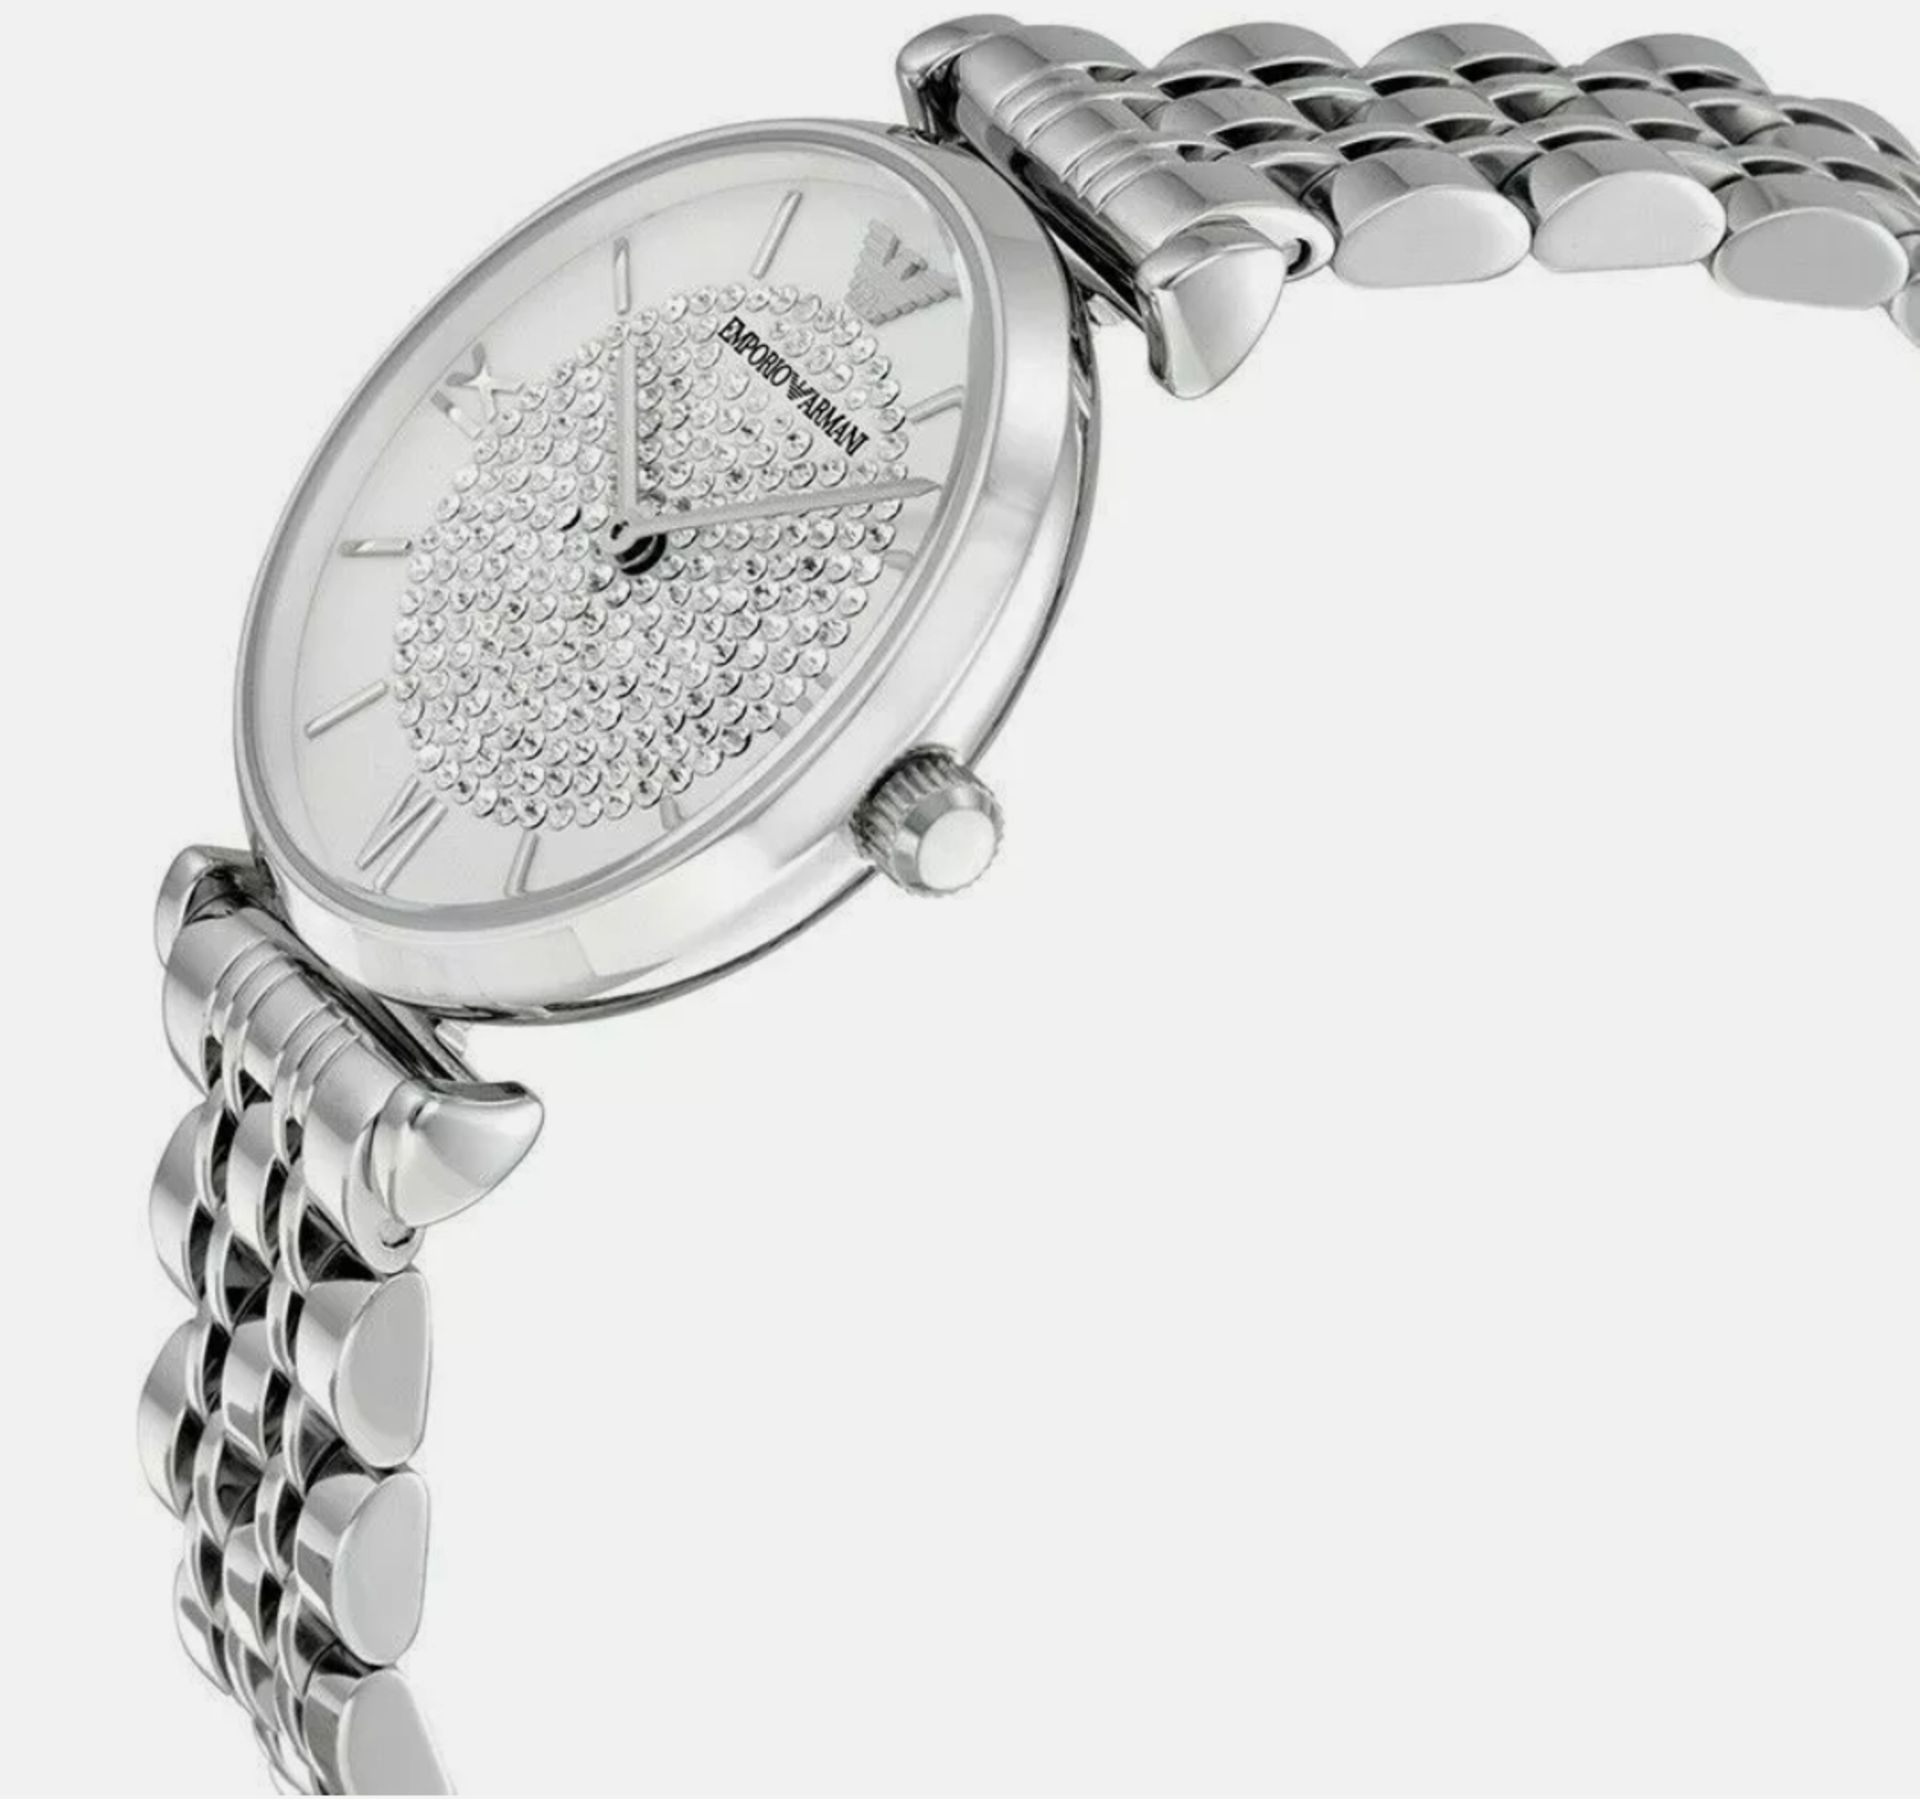 Emporio Armani Gianni T-Bar 32mm Ladies Quartz Designer Watch AR1925 - Image 2 of 8